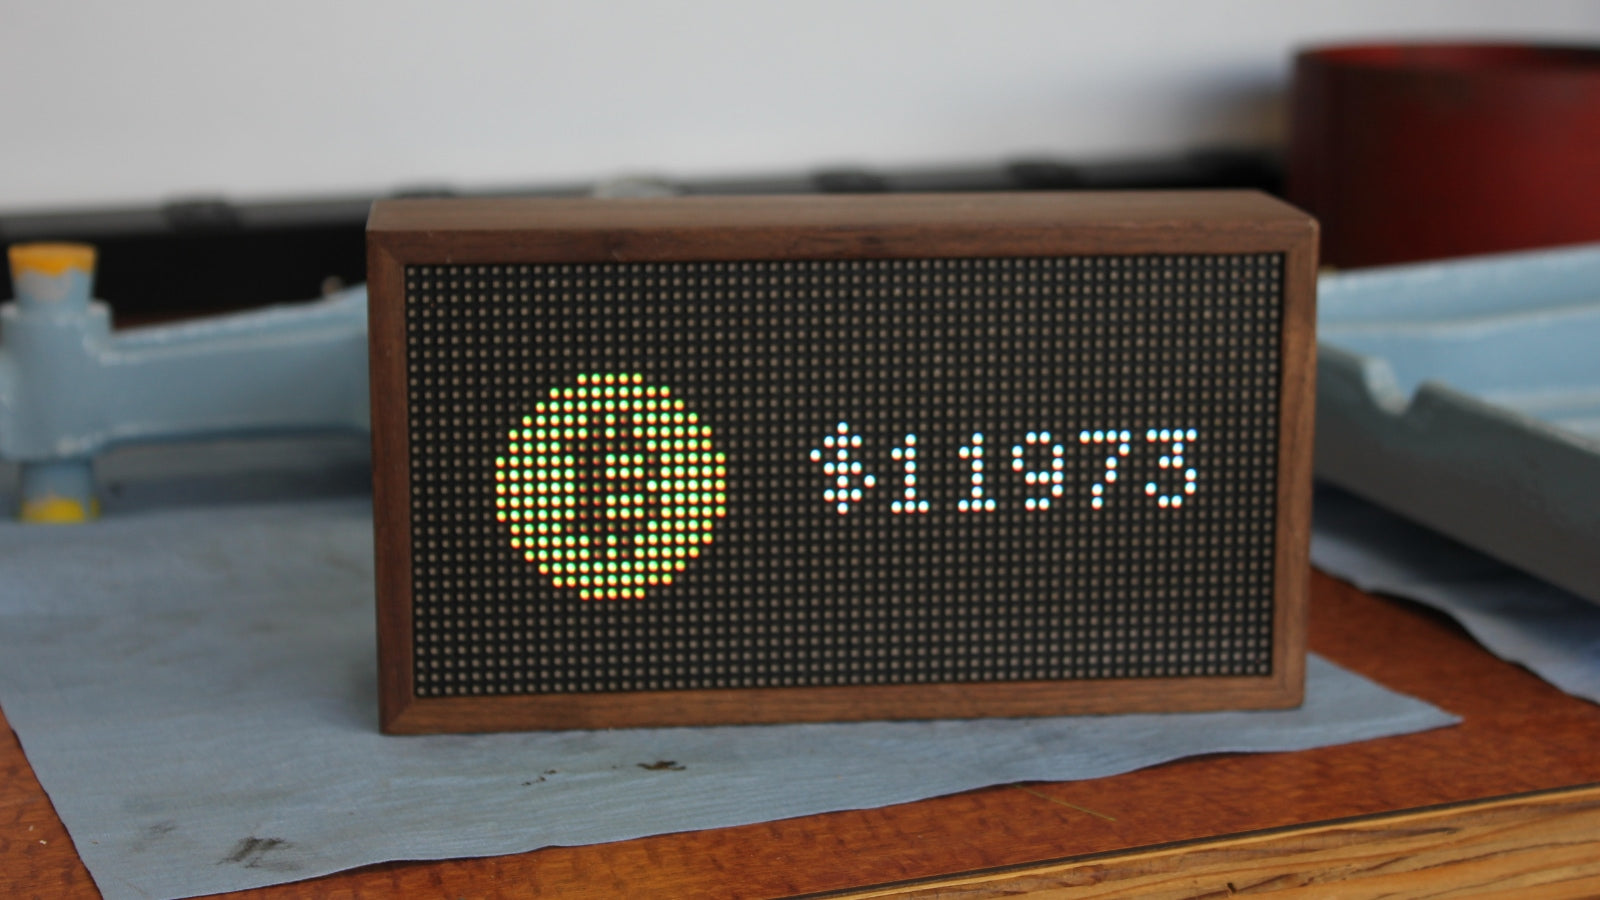 Building a Pixel Art Bitcoin Tracker